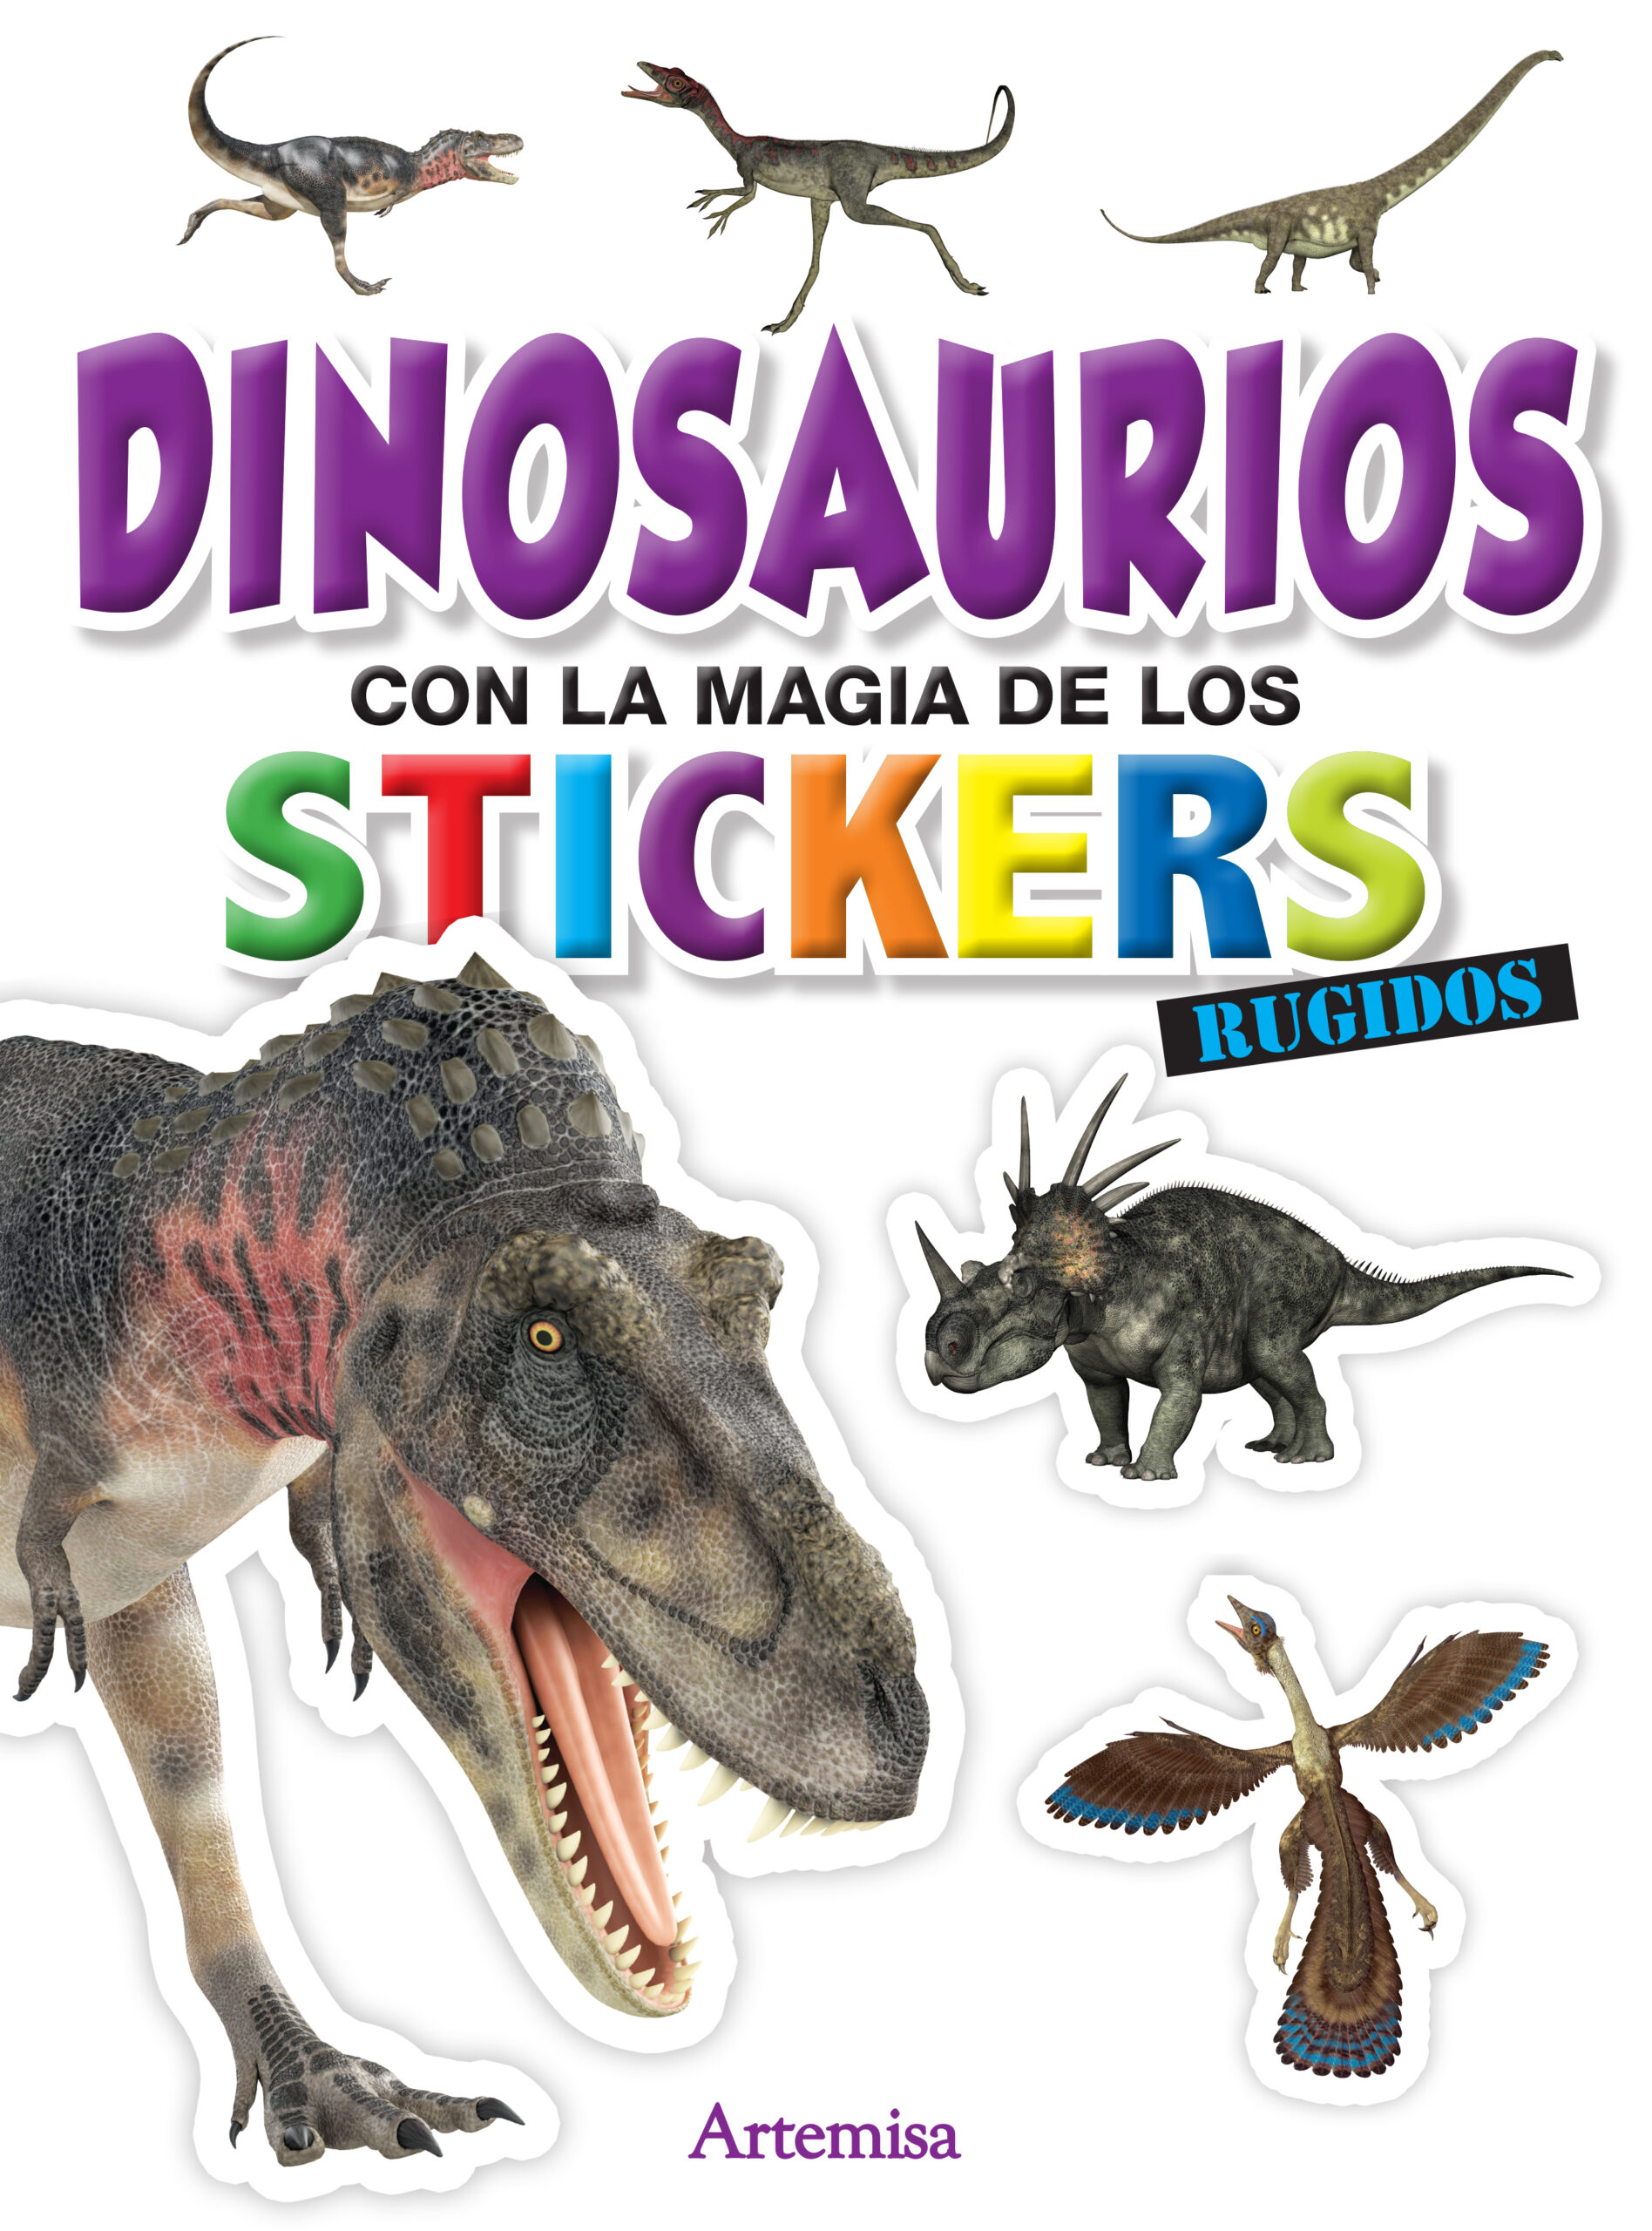 Dinosaurios con la magia de los stickers- Rugidos - Bora Books